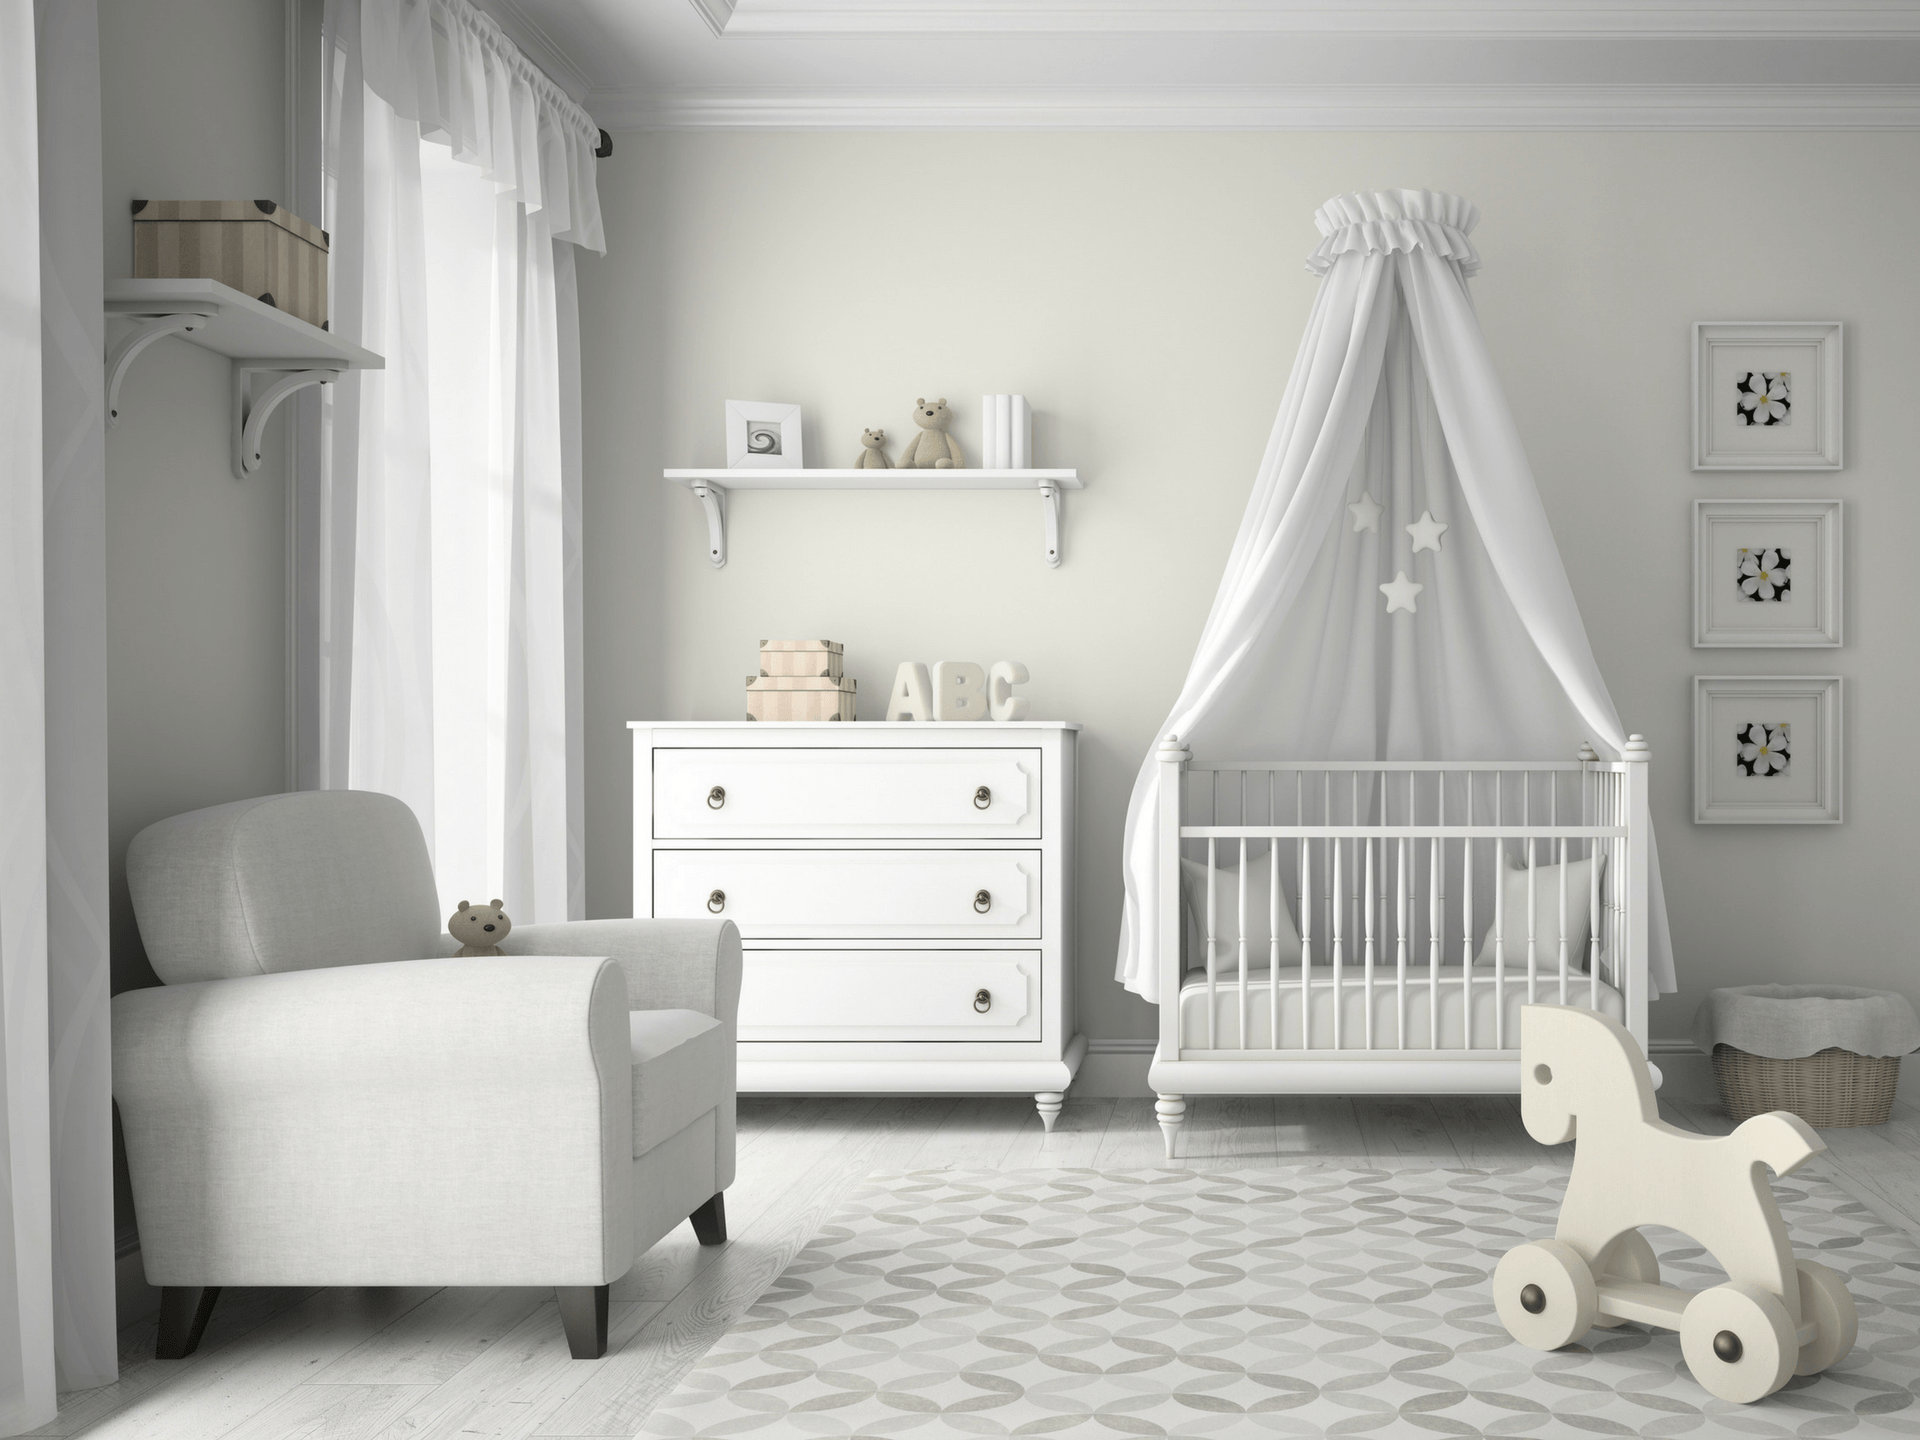 baby room decor ideas unisex